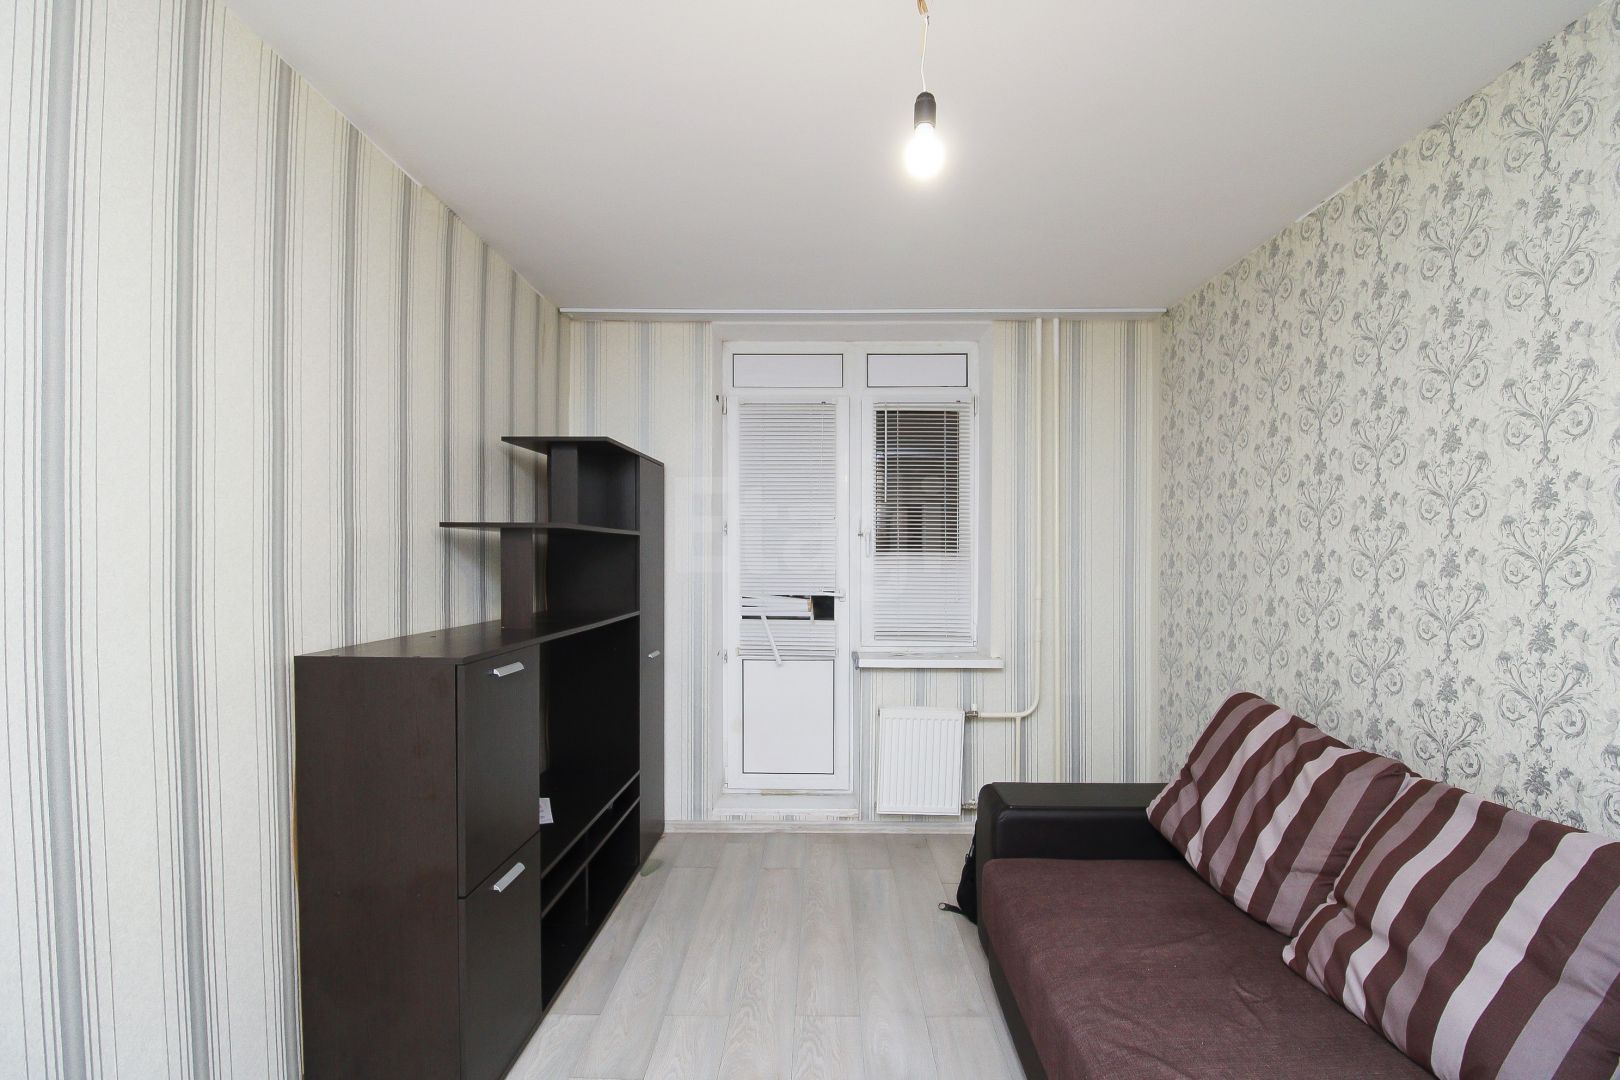 Купить квартиру в санкт петербурге без первоначального взноса в ипотеку